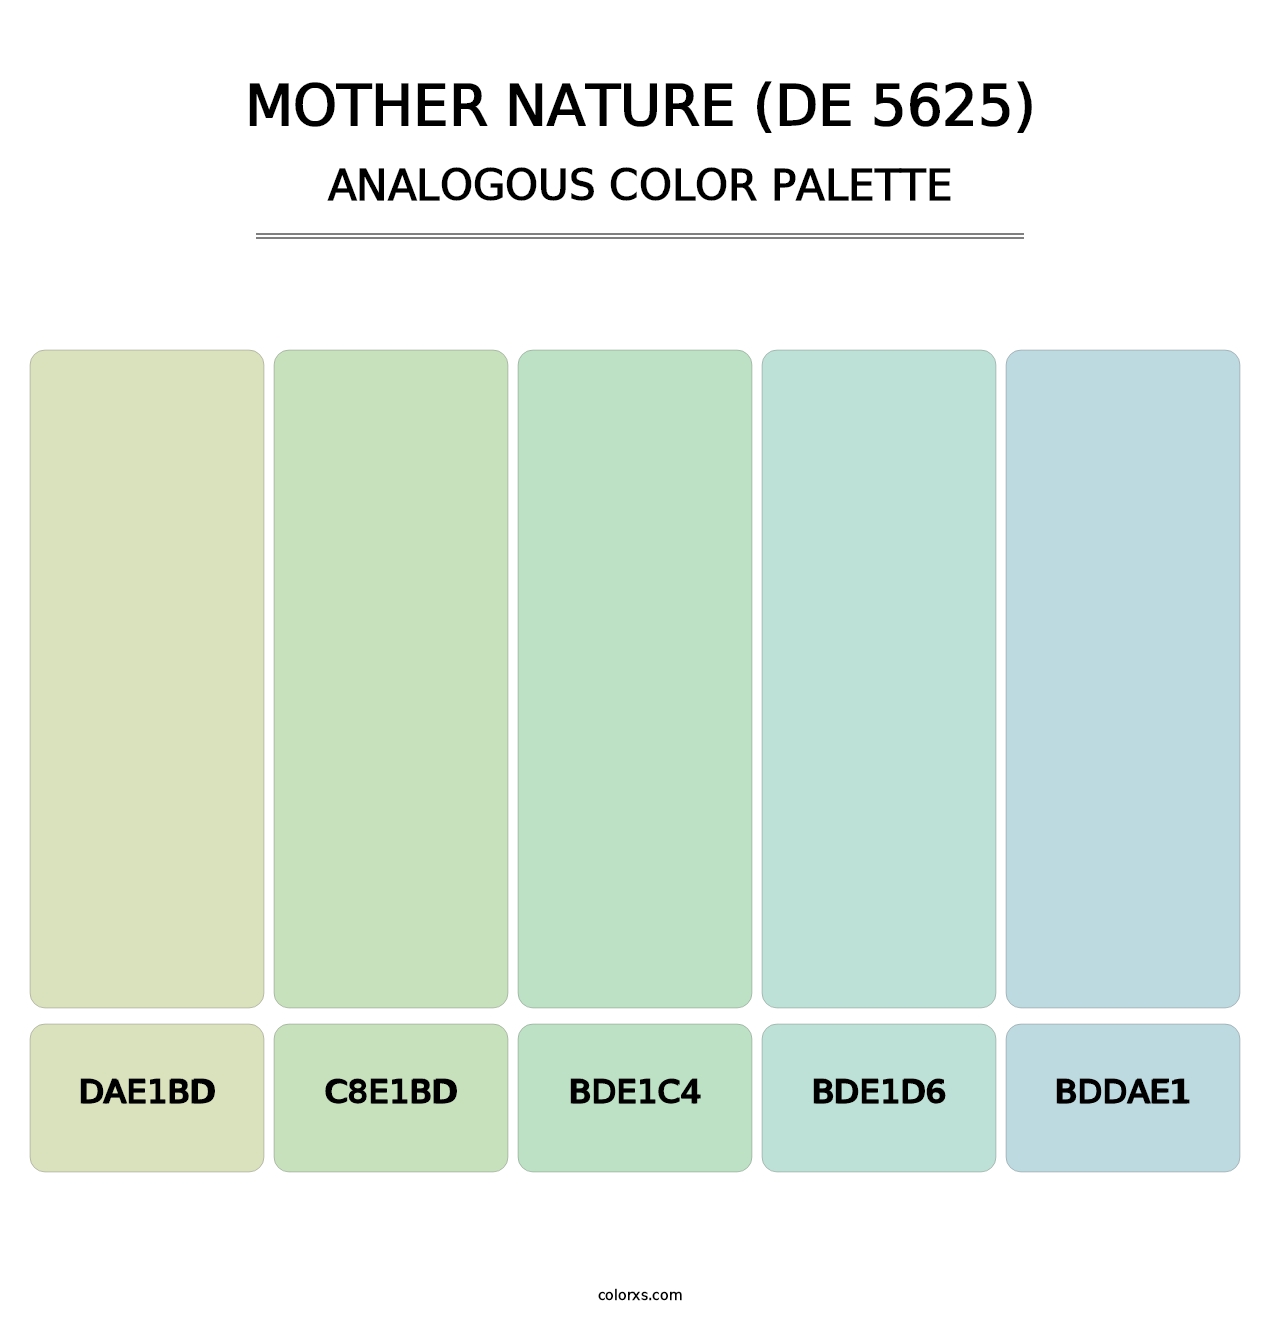 Mother Nature (DE 5625) - Analogous Color Palette